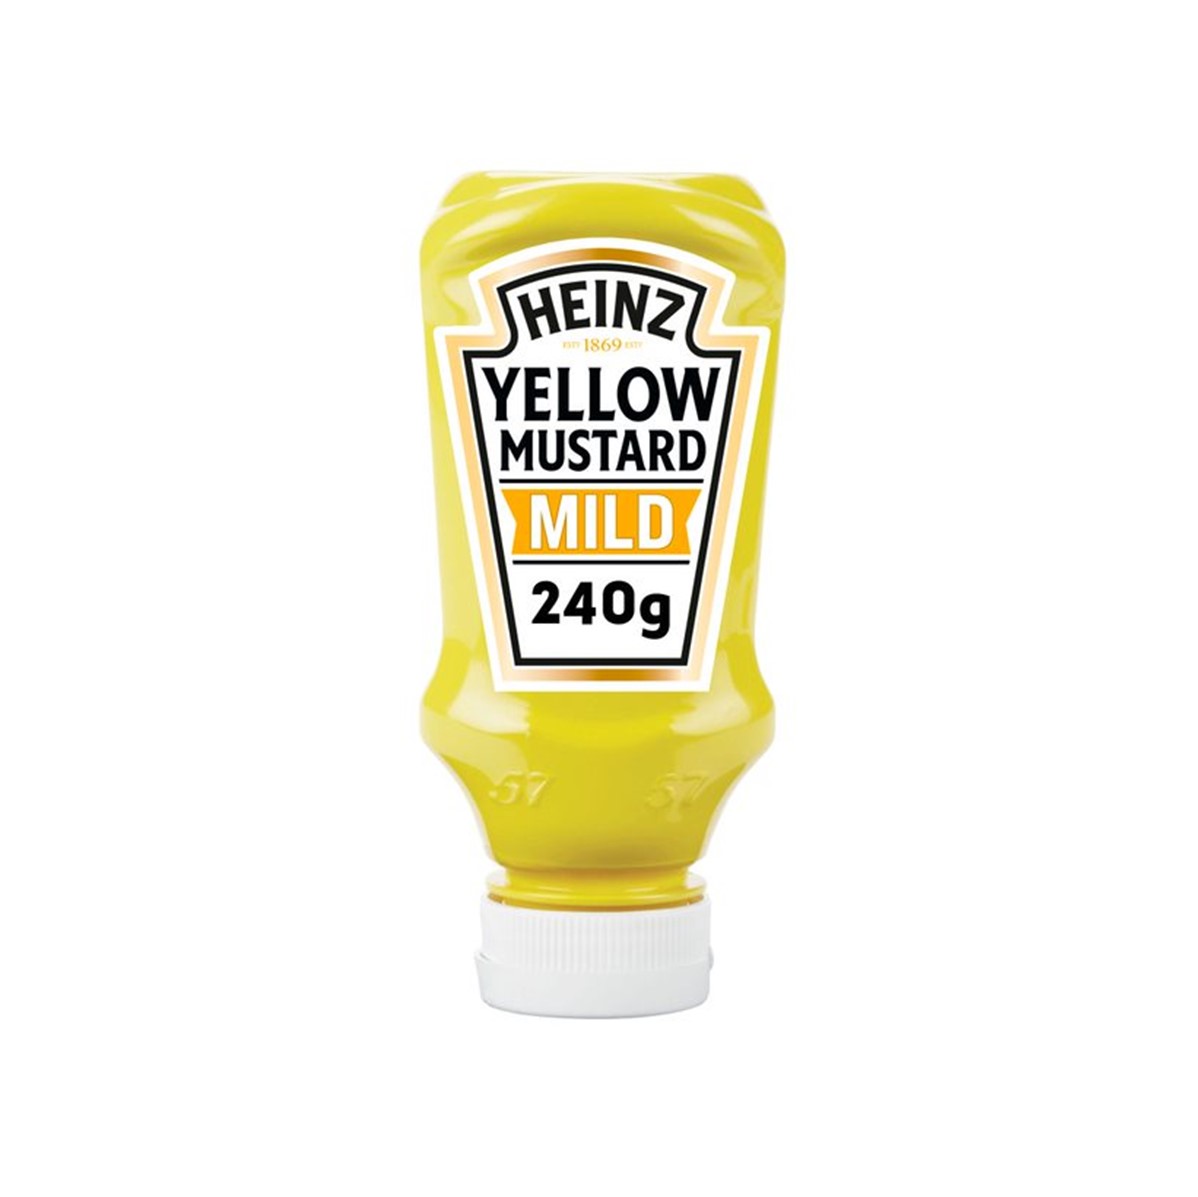 Heinz Yellow Mustard Mild - 240g squeezy bottle